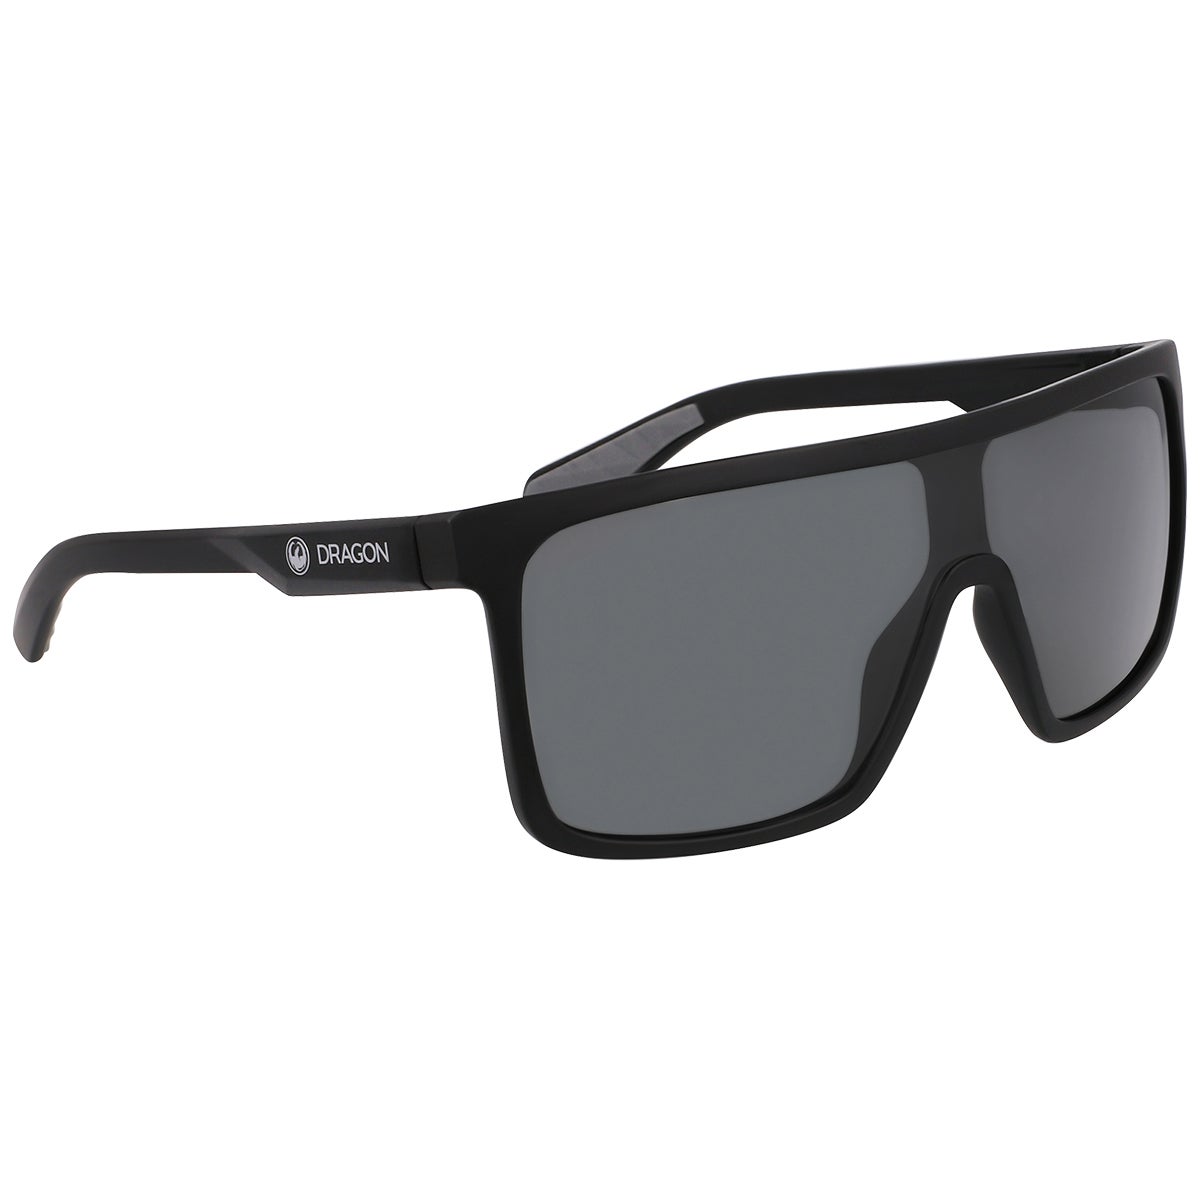 Dragon Momentum H2O Lumalens Polarized Sunglasses in Matte Black/Smoke